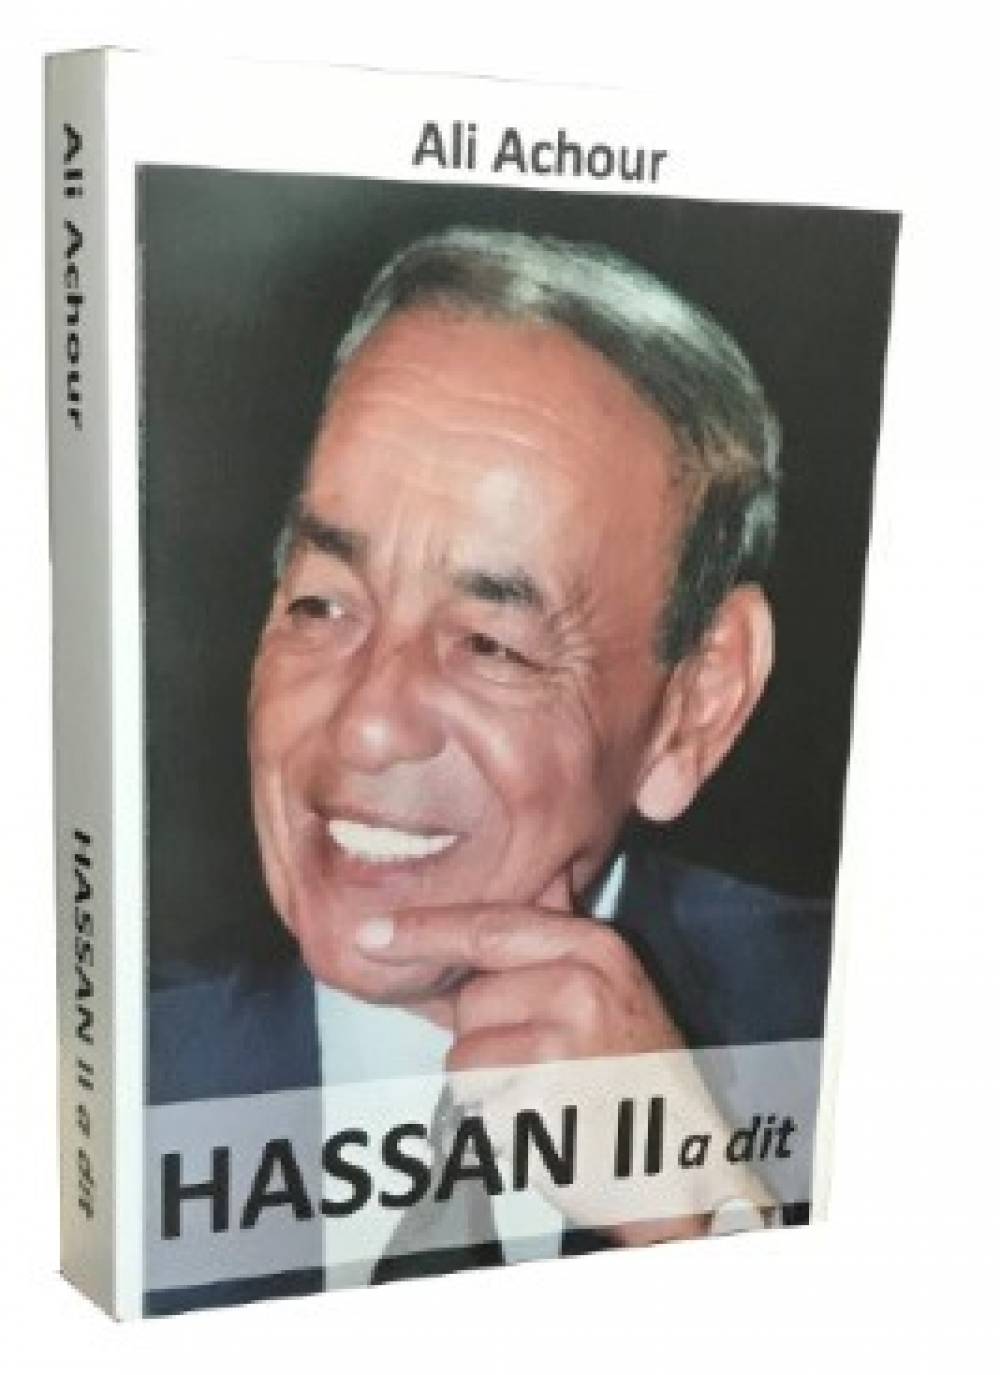 Extrait de livre : Ali Achour revient sur les citations de Feu le Roi Hassan II sur le Sahara